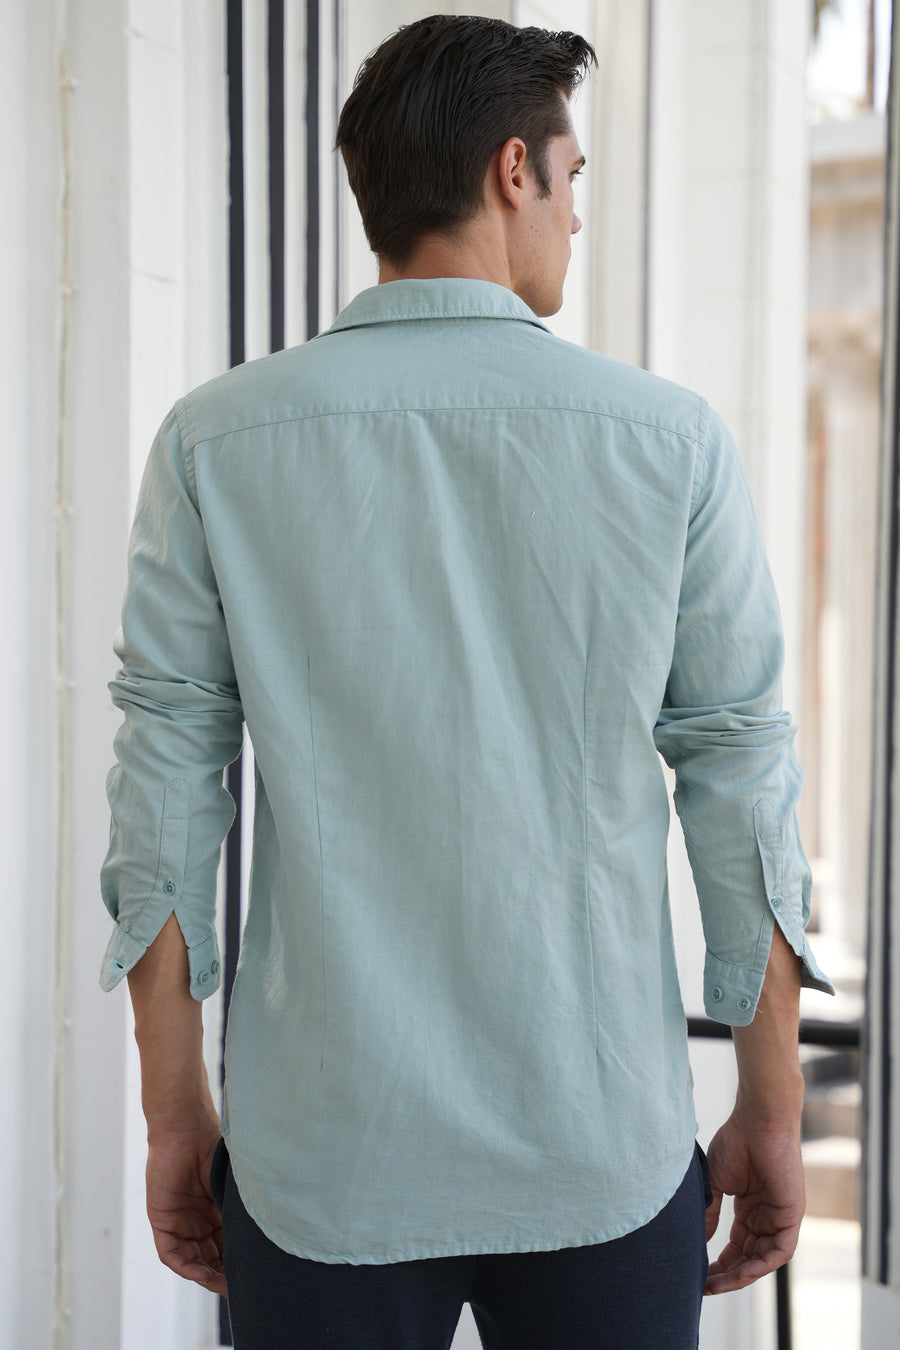 Fruel - Cotton Linen Shirt - Green